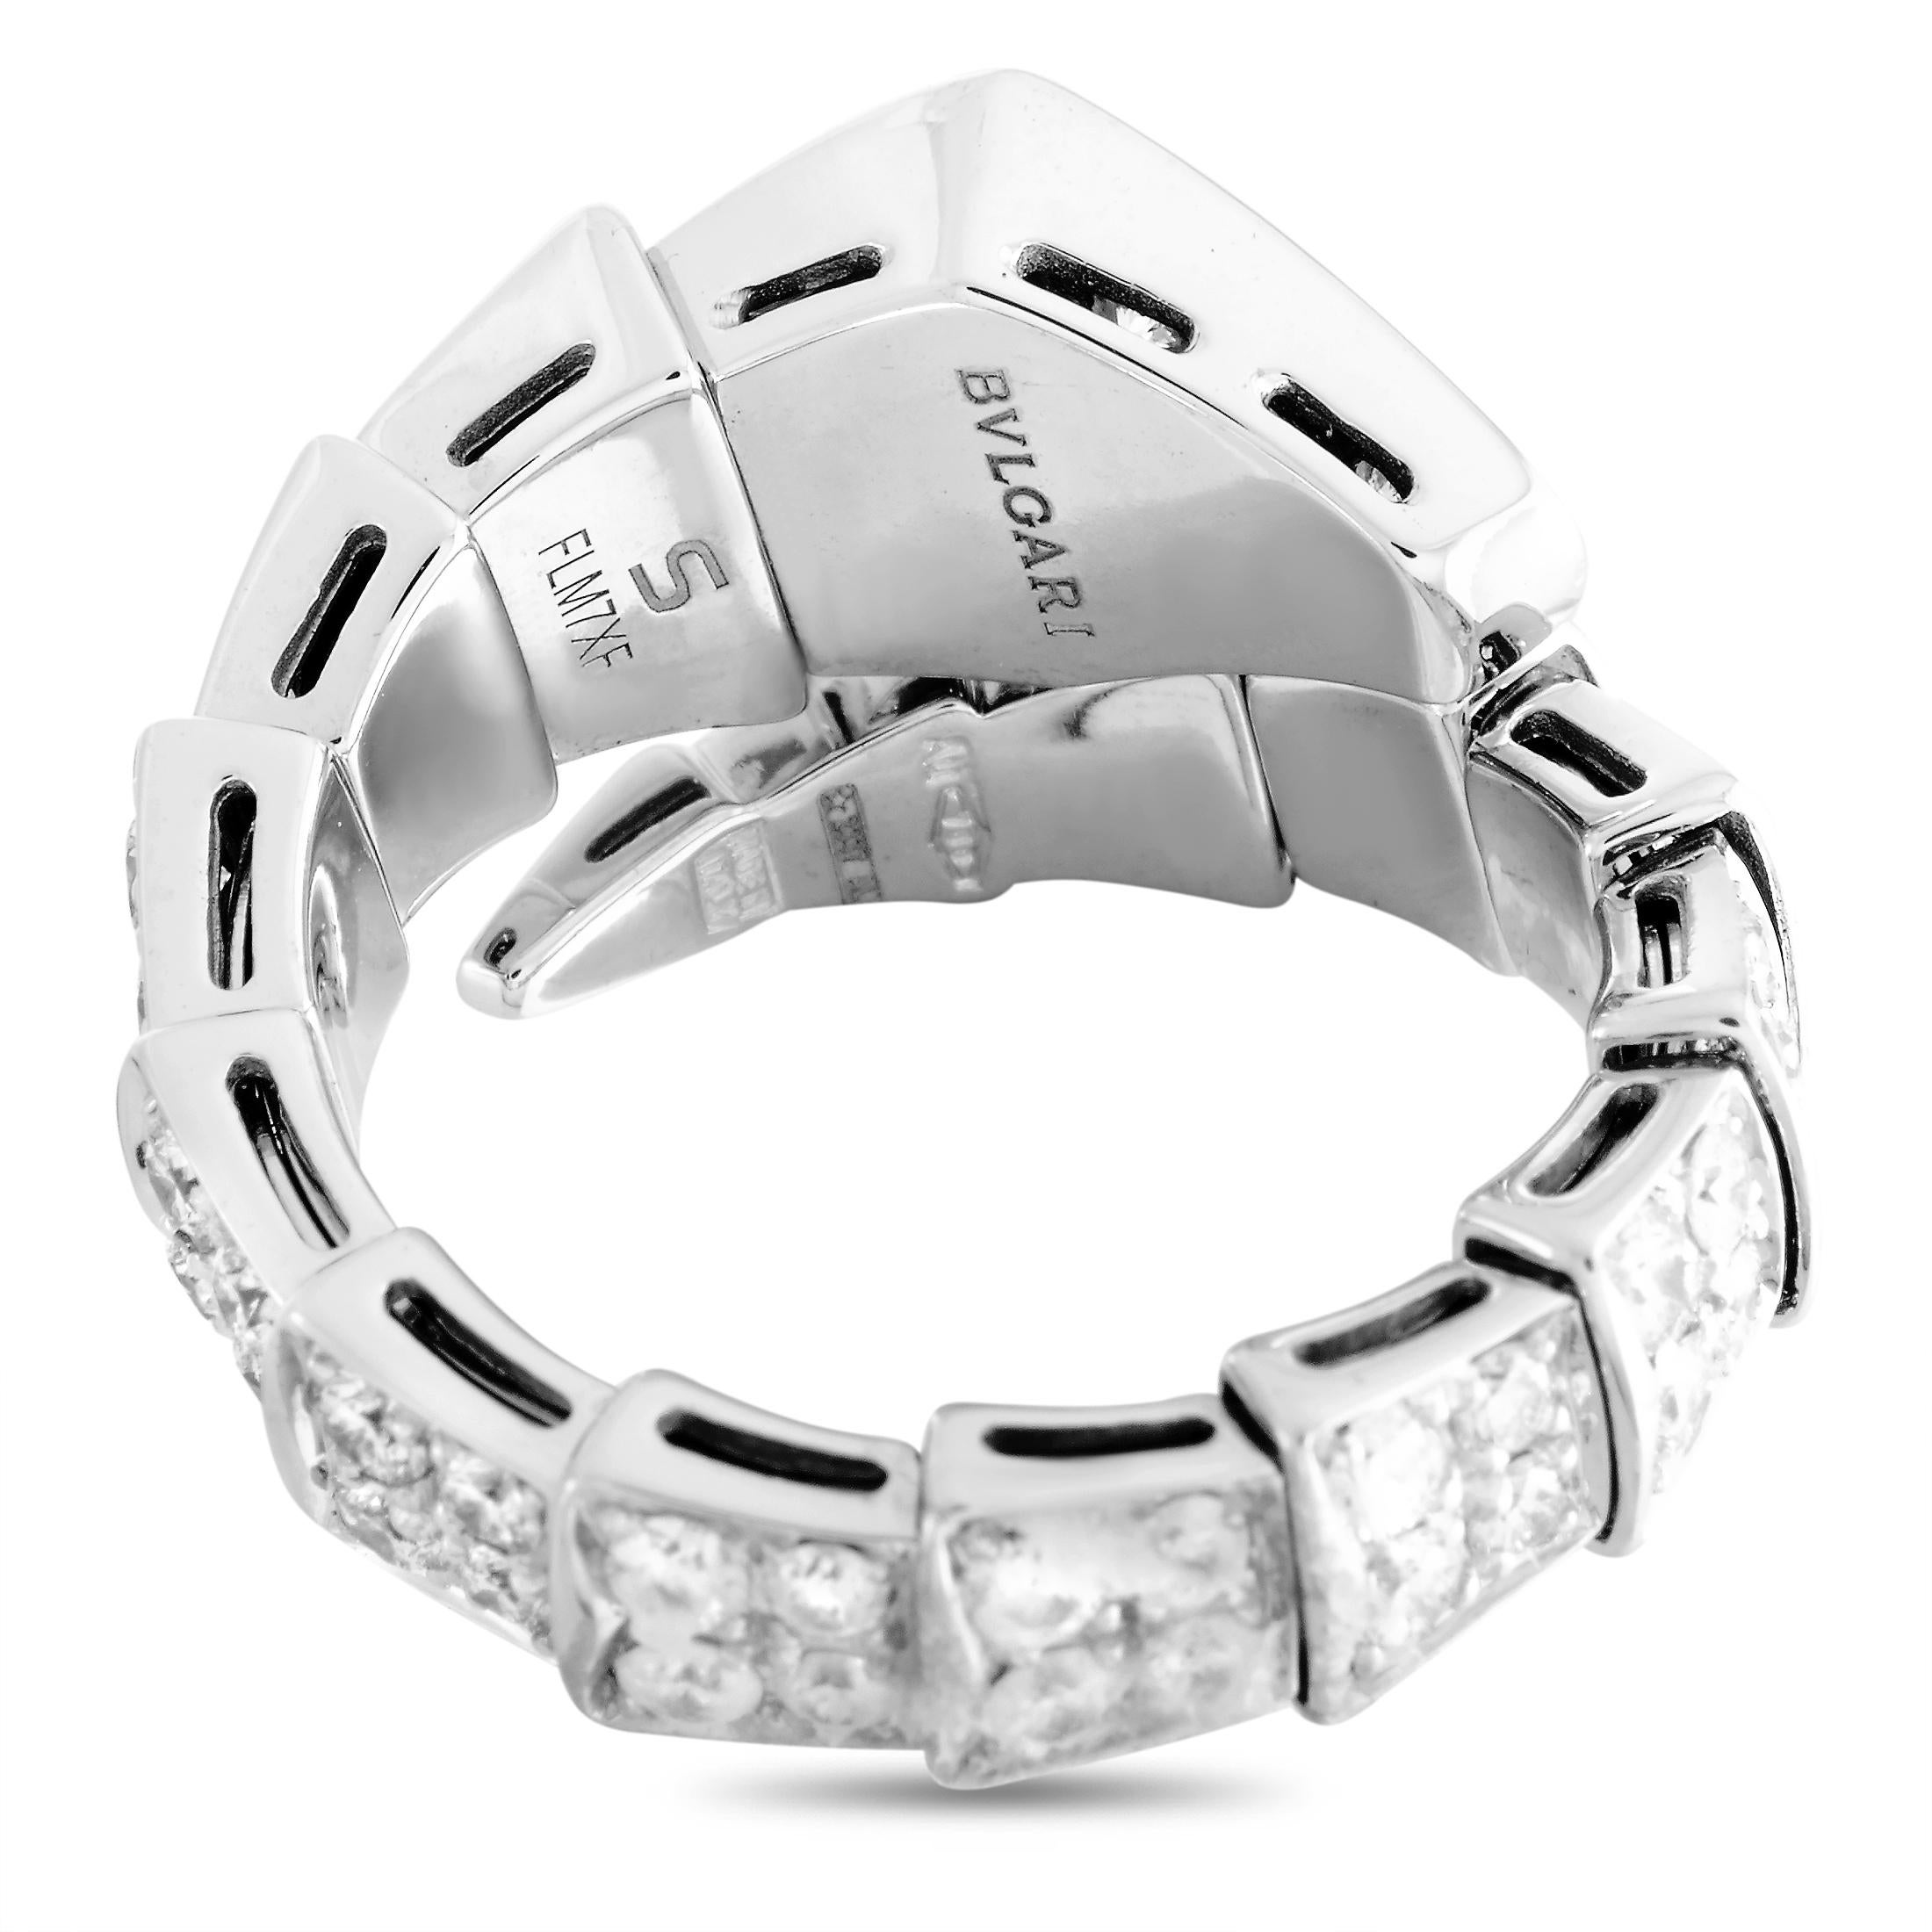 Round Cut Bvlgari Serpenti 18k White Gold Diamond Ring